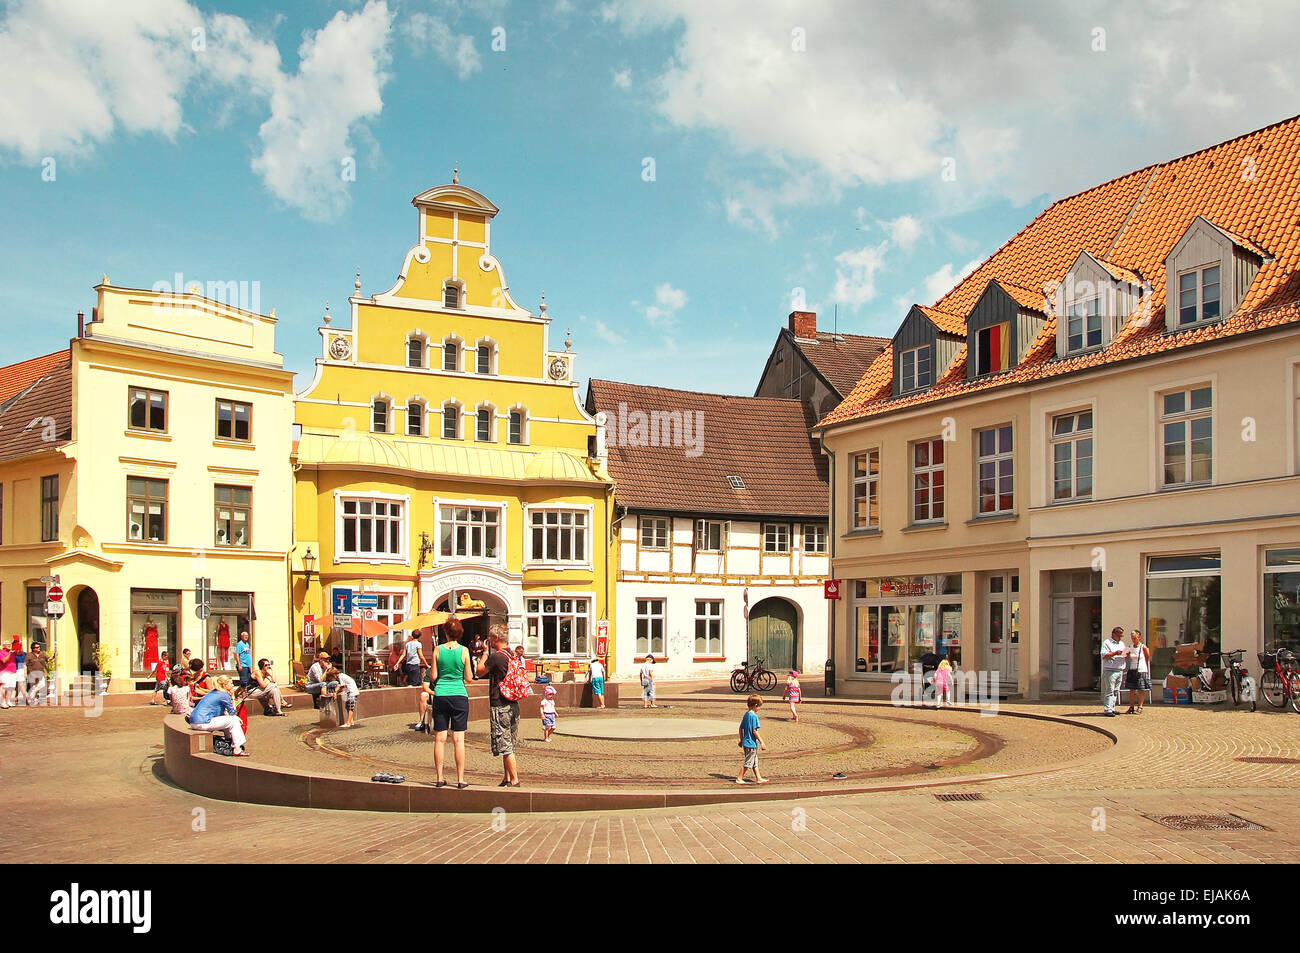 La ville hanséatique de Wismar, Allemagne Banque D'Images